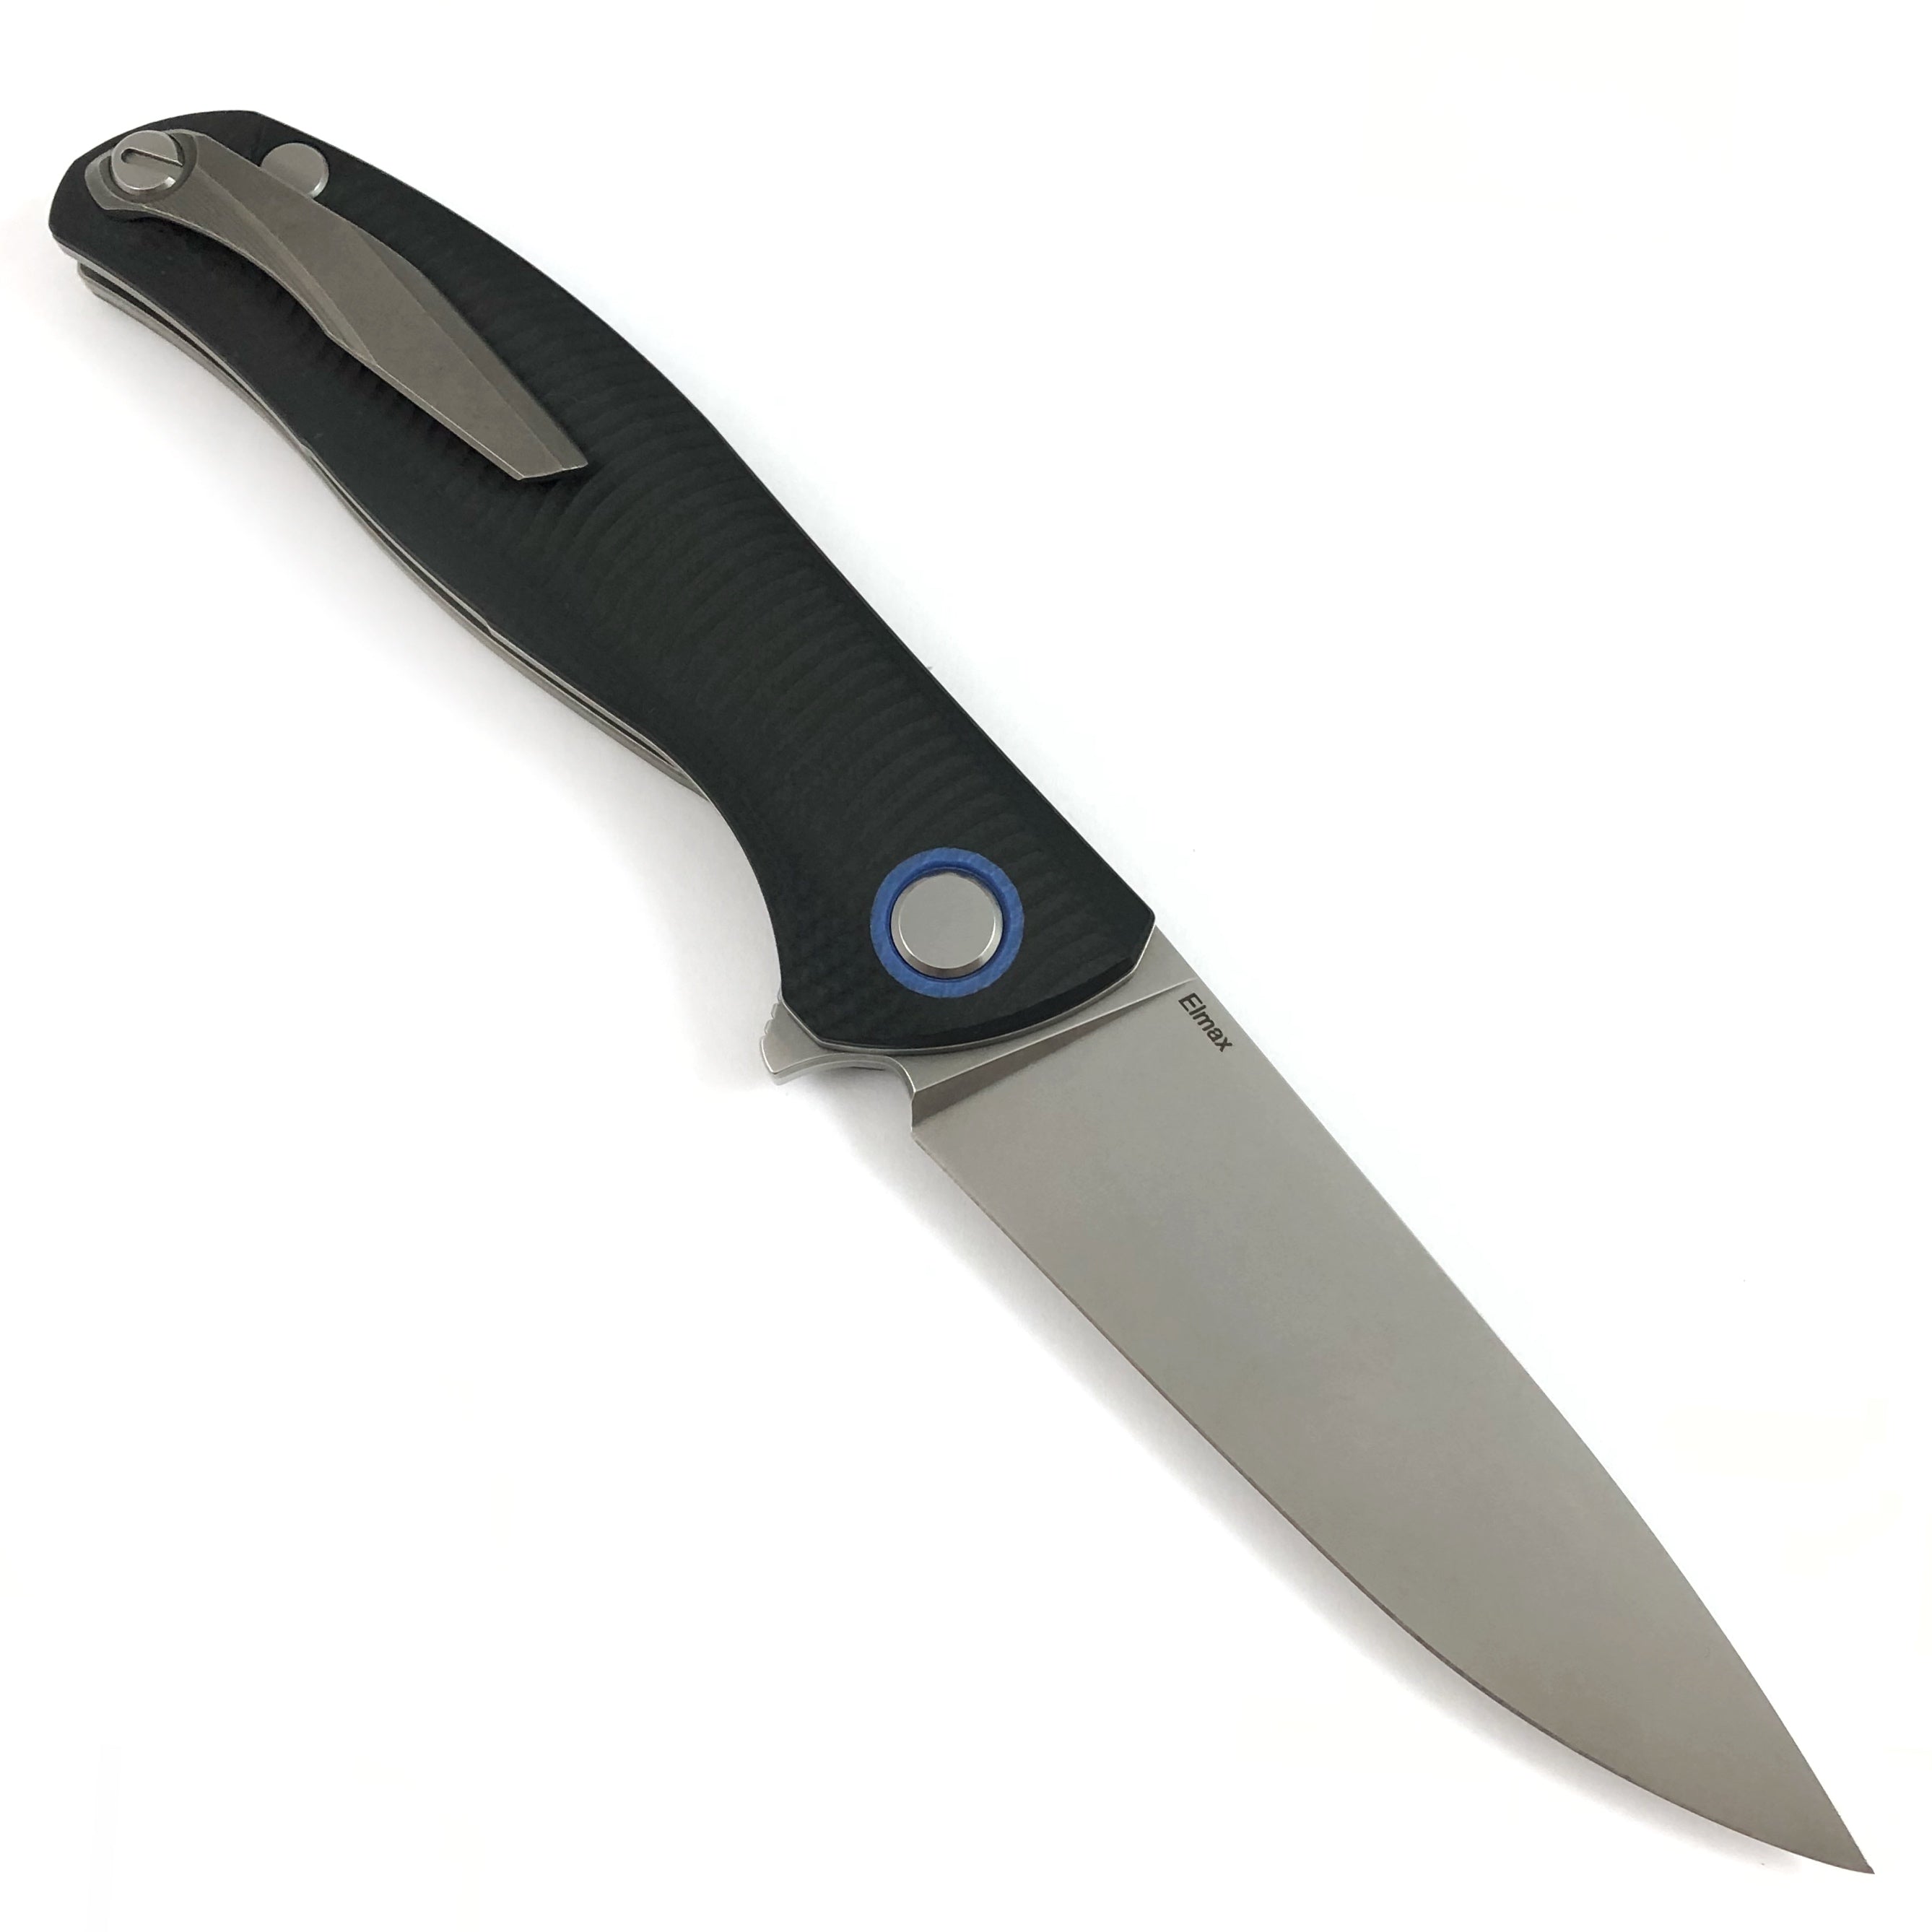 SHIROGOROV F3 - ELMAX full flat grind blade - black g10 handle w- blue accents- SRB